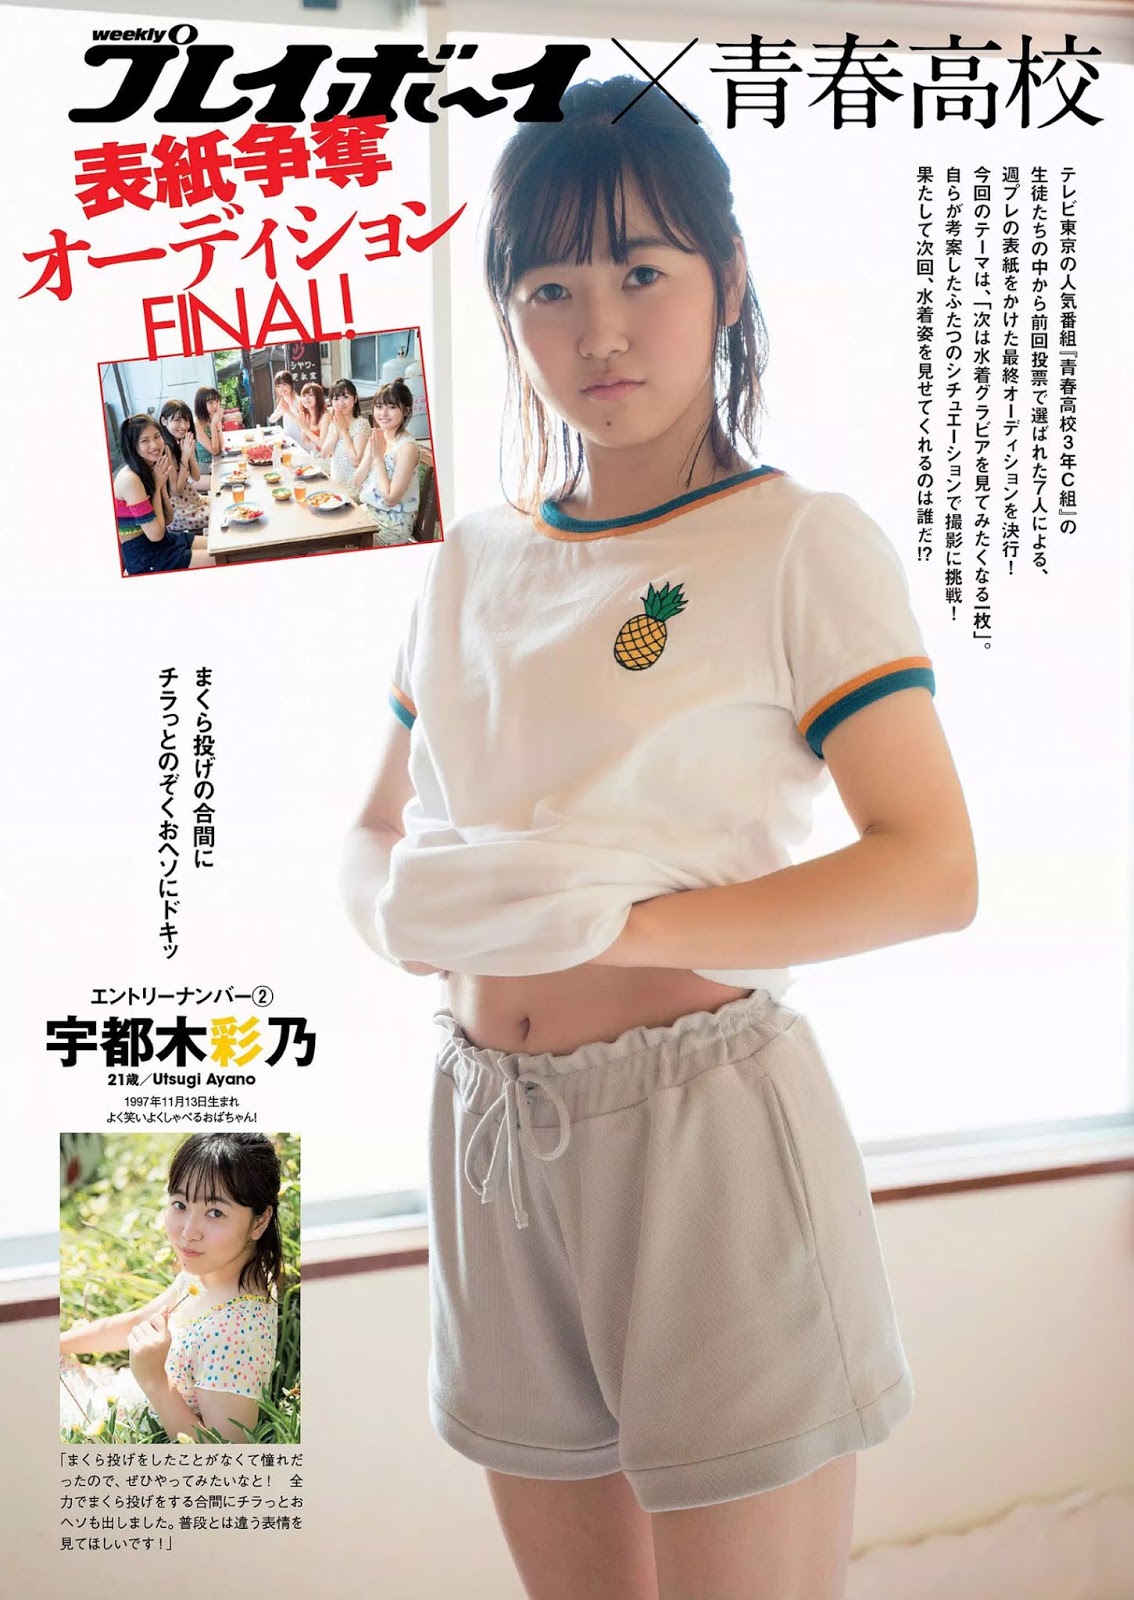 青春高校3年C組, Weekly Playboy 2019 No.42 (週刊プレイボーイ 2019年42号)